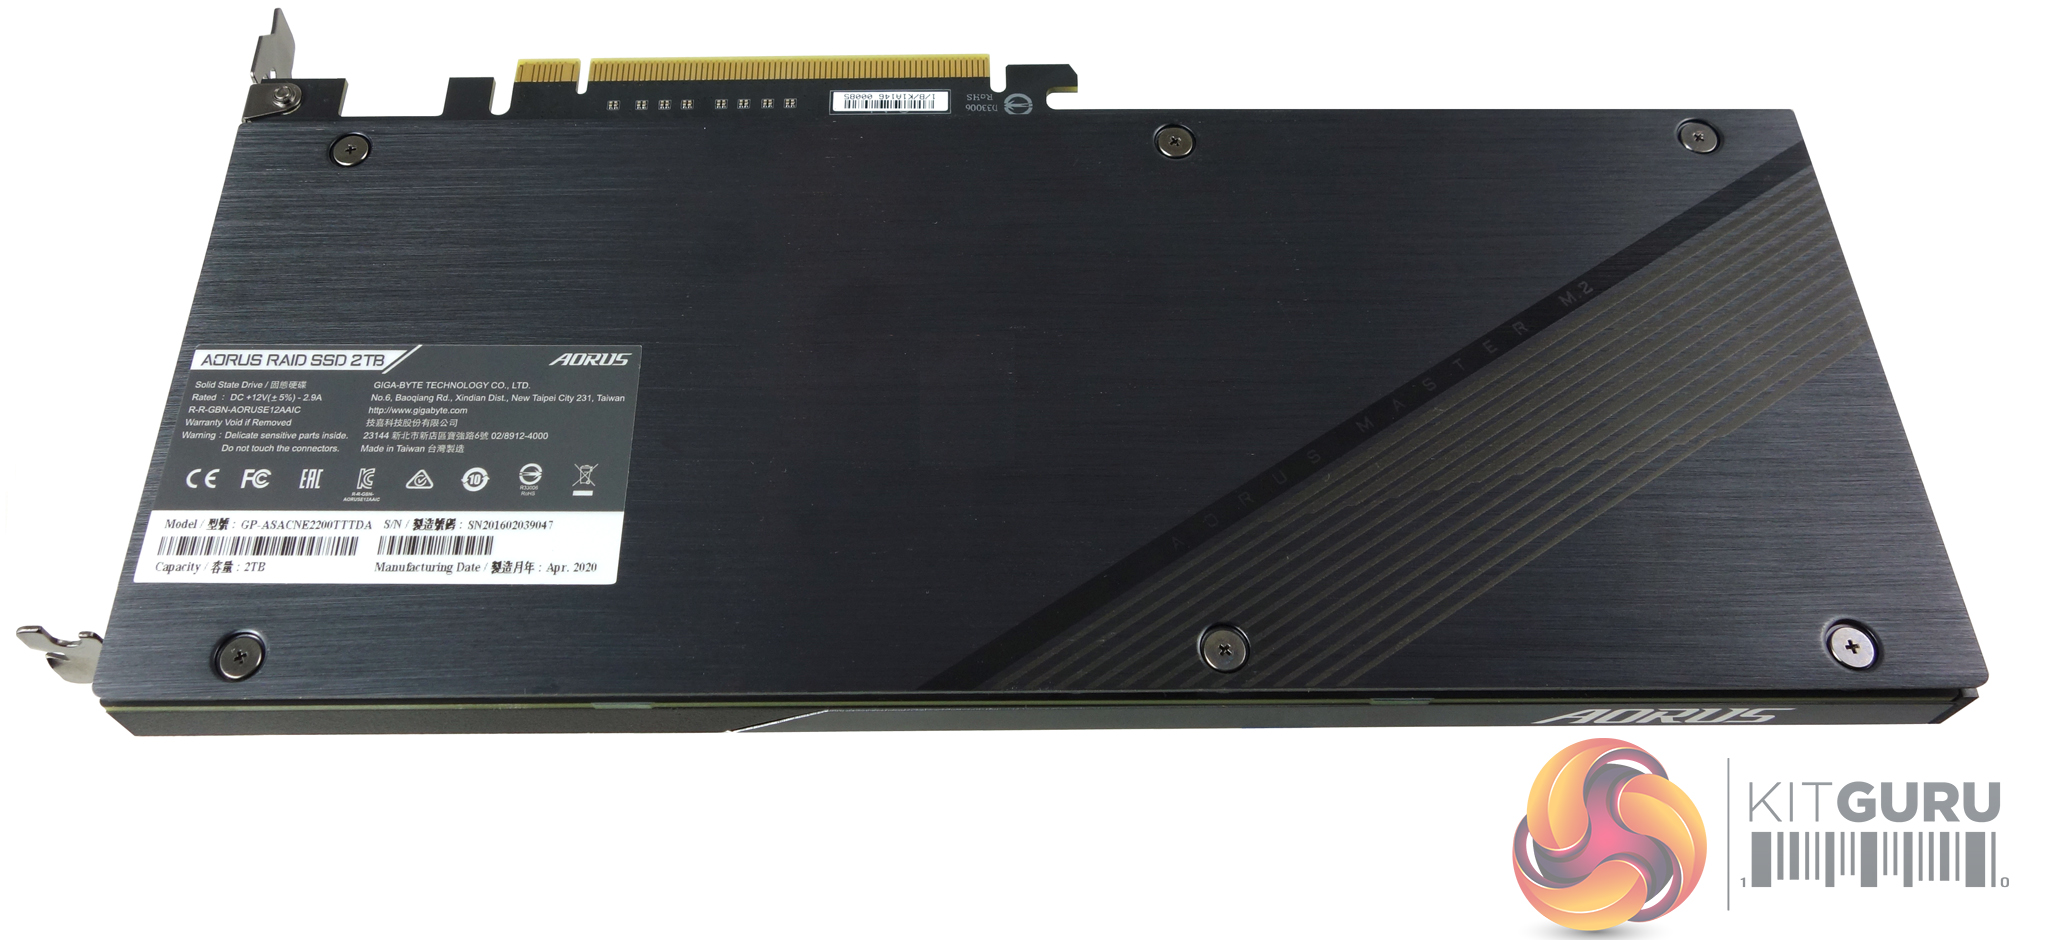 Gigabyte AORUS RAID SSD 2TB Review | KitGuru- Part 2